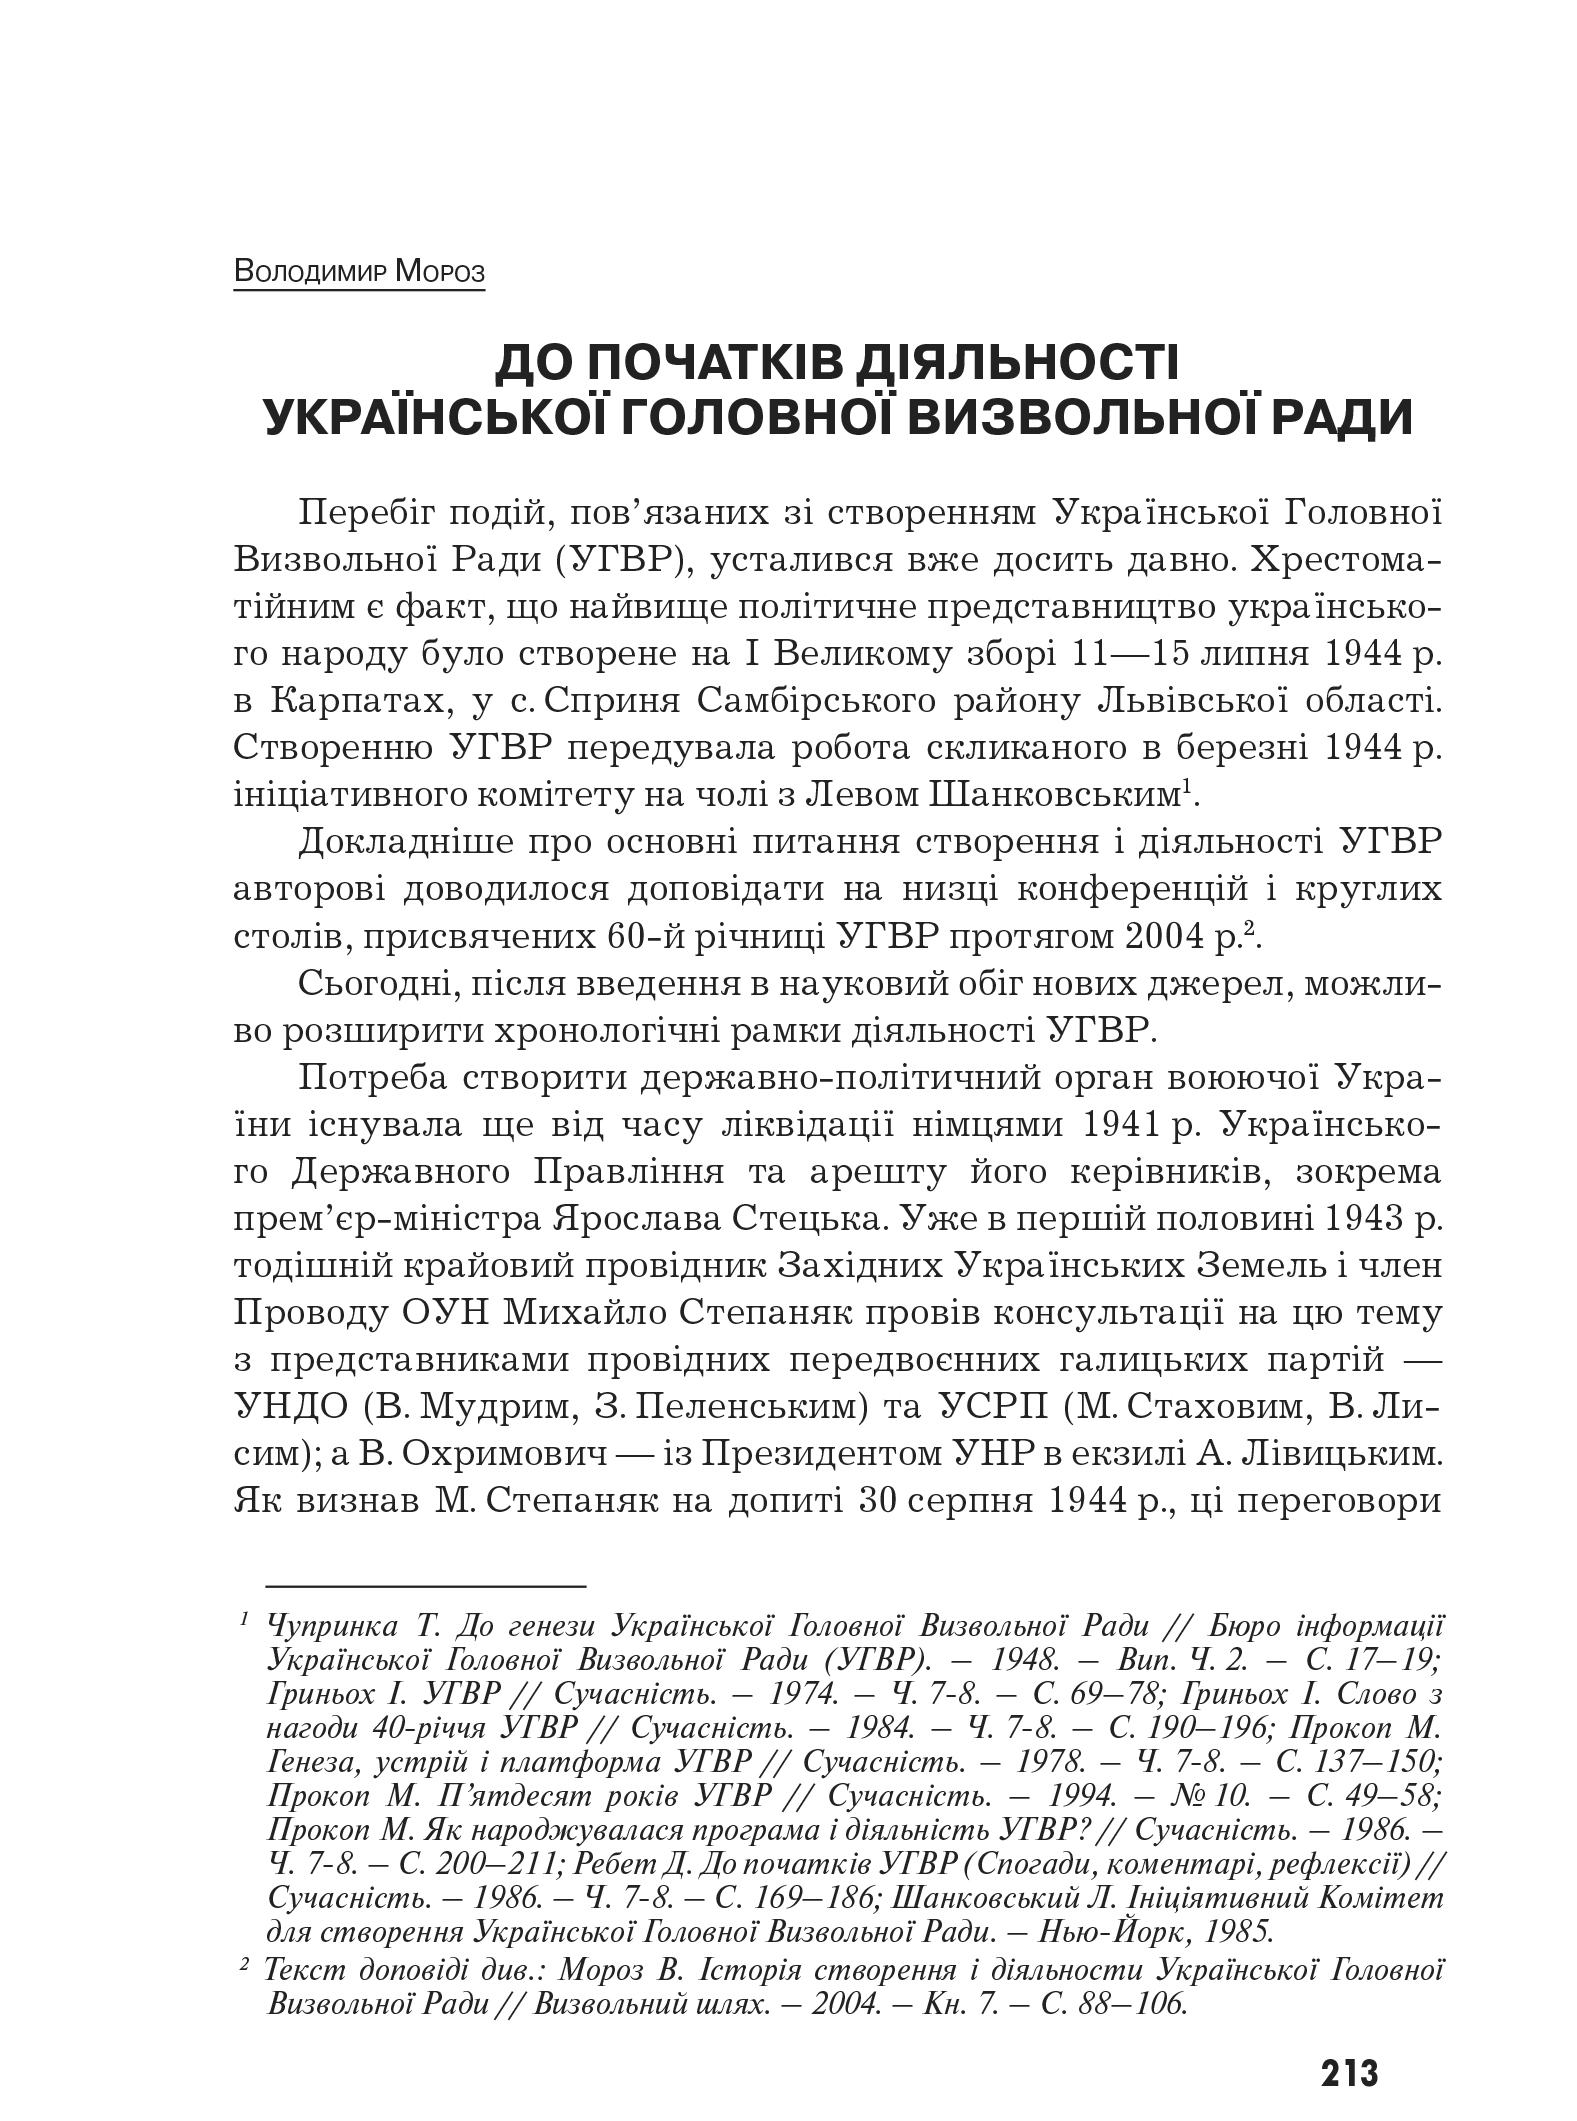 Український визвольний рух №10, ст. 213 - 232